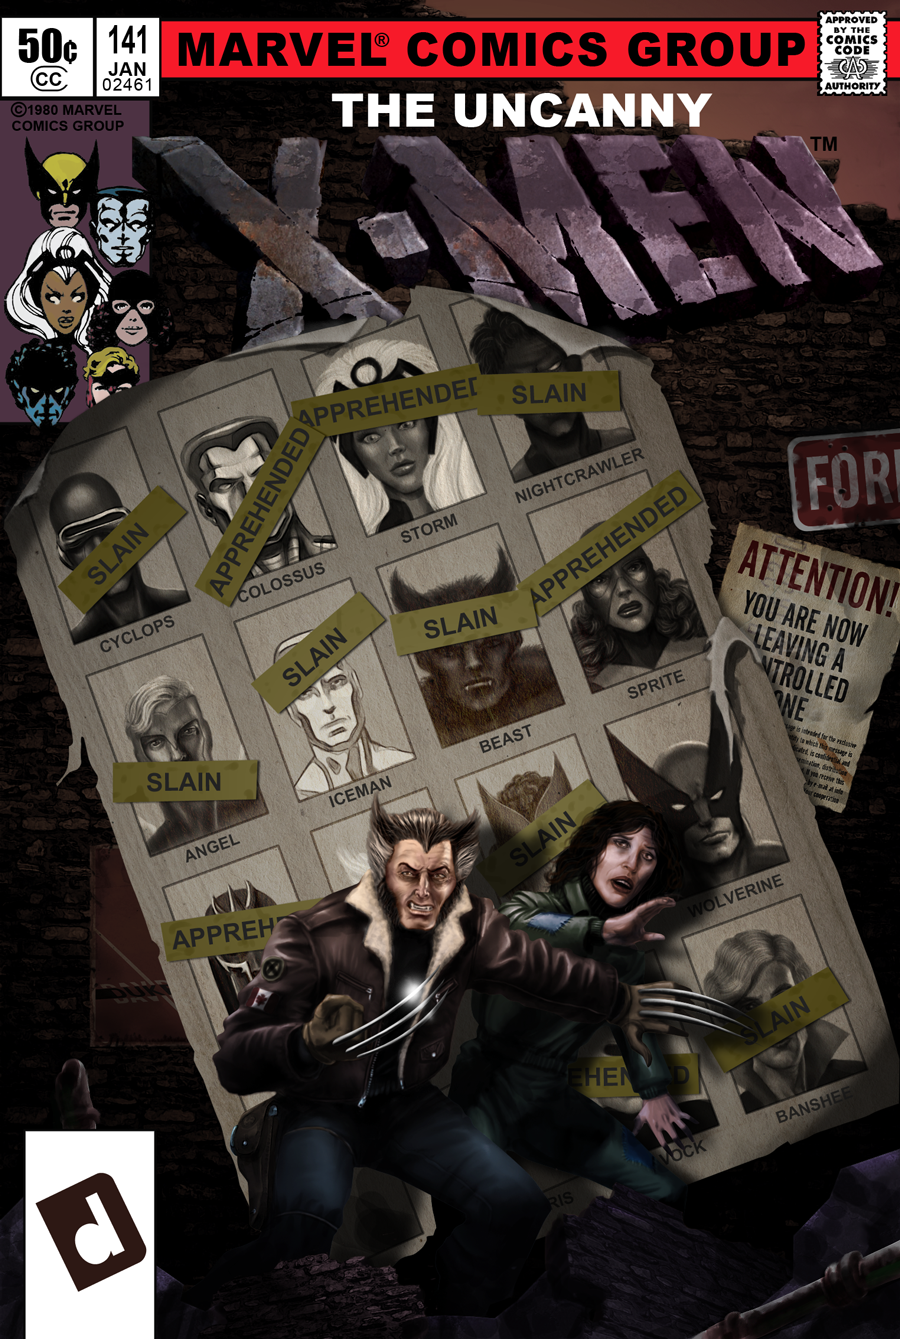 Uncanny X-Men 141 by Duke